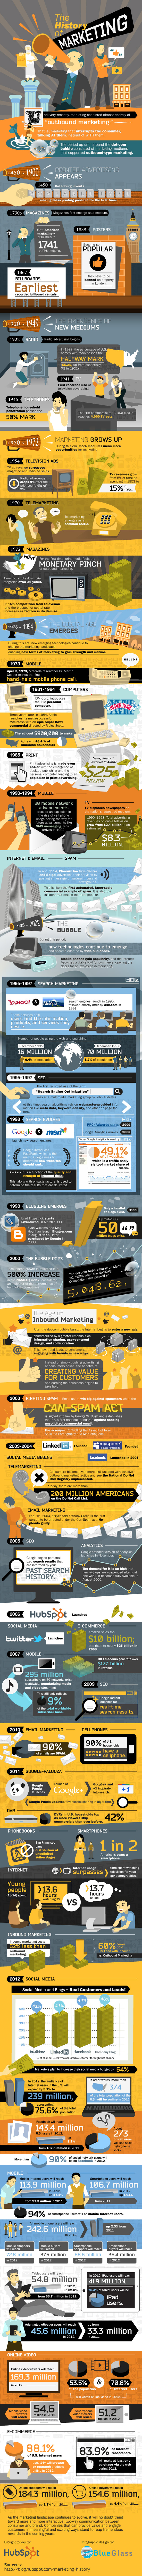 Infografía: La historia del marketing